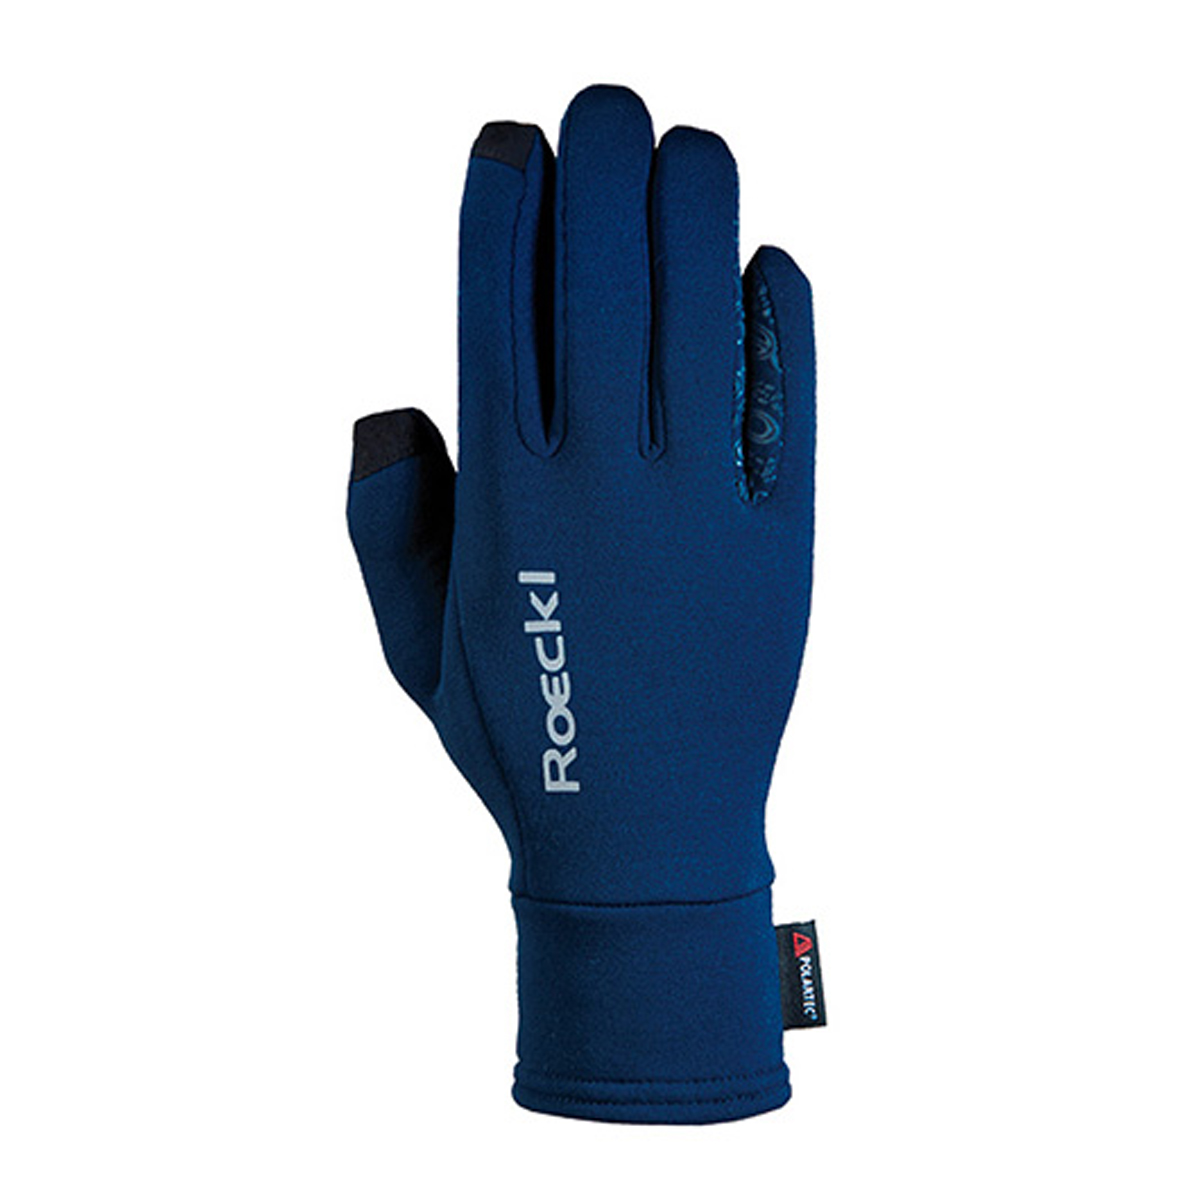 Handschoenen Roeckl Weldon Polartec, 9,5 in donkerblauw